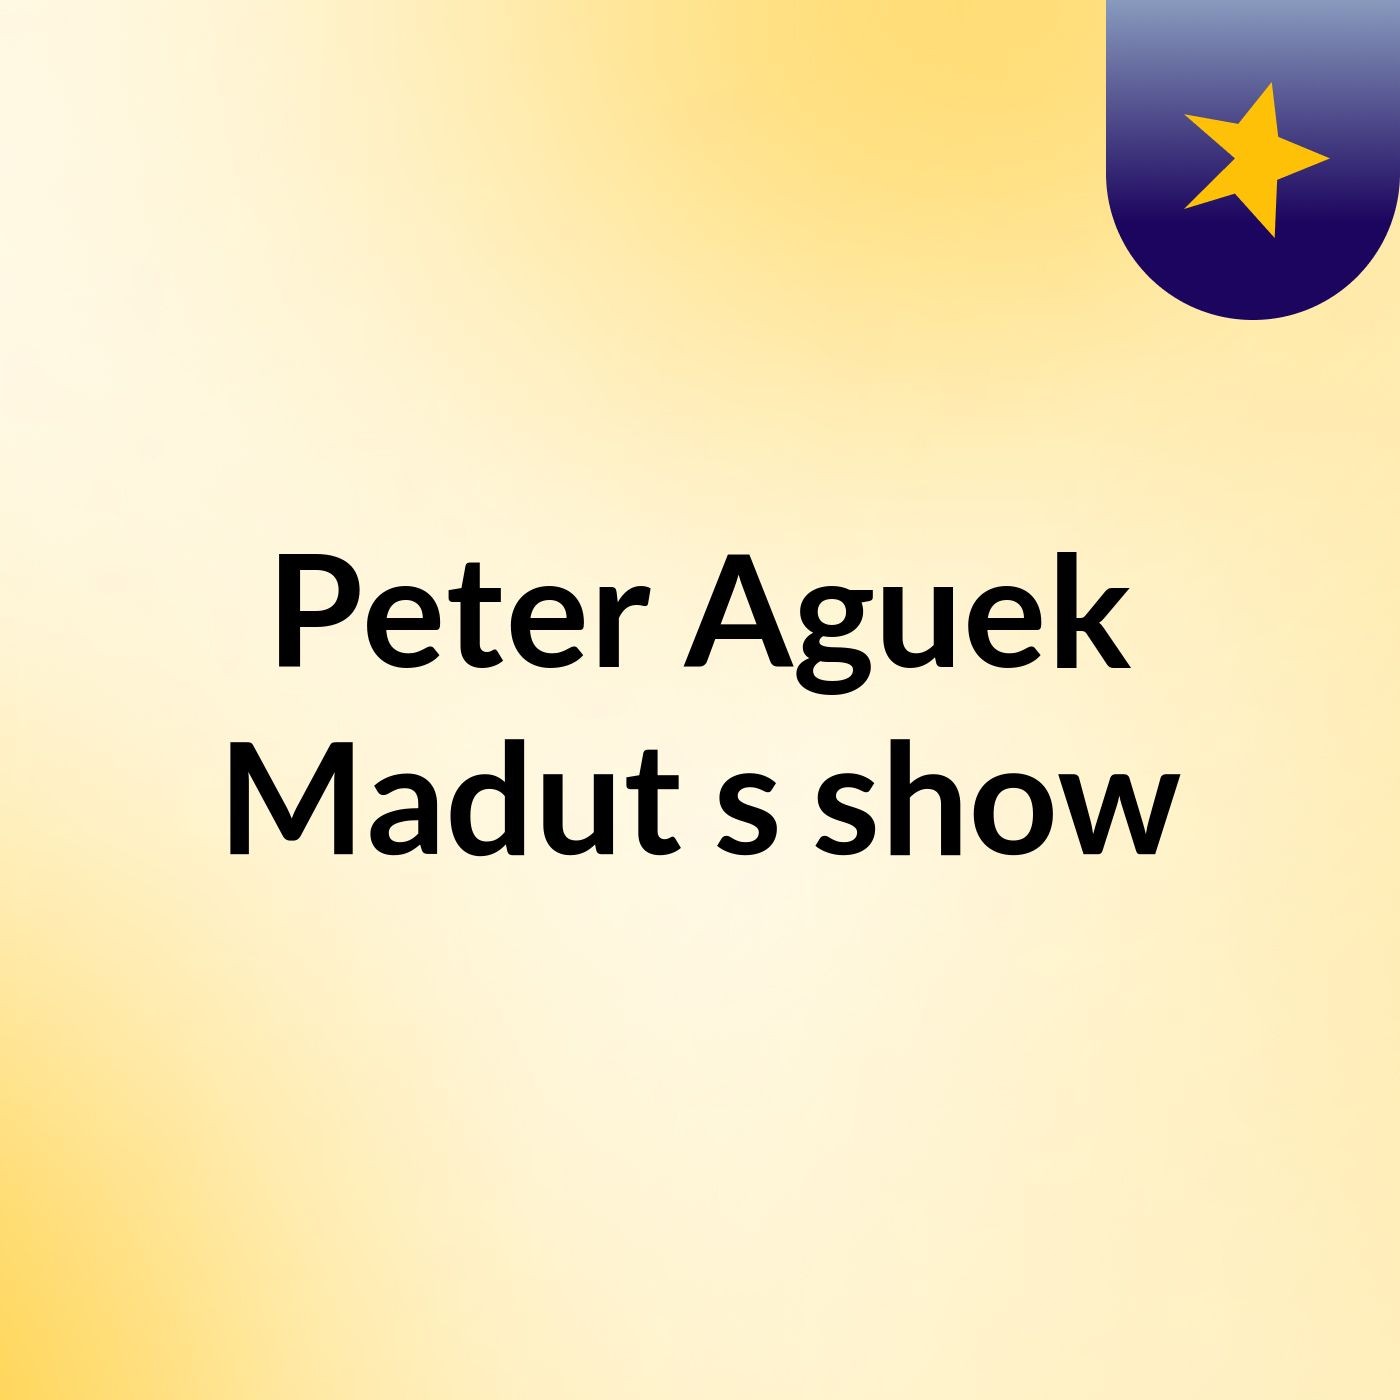 Peter Aguek Madut's show